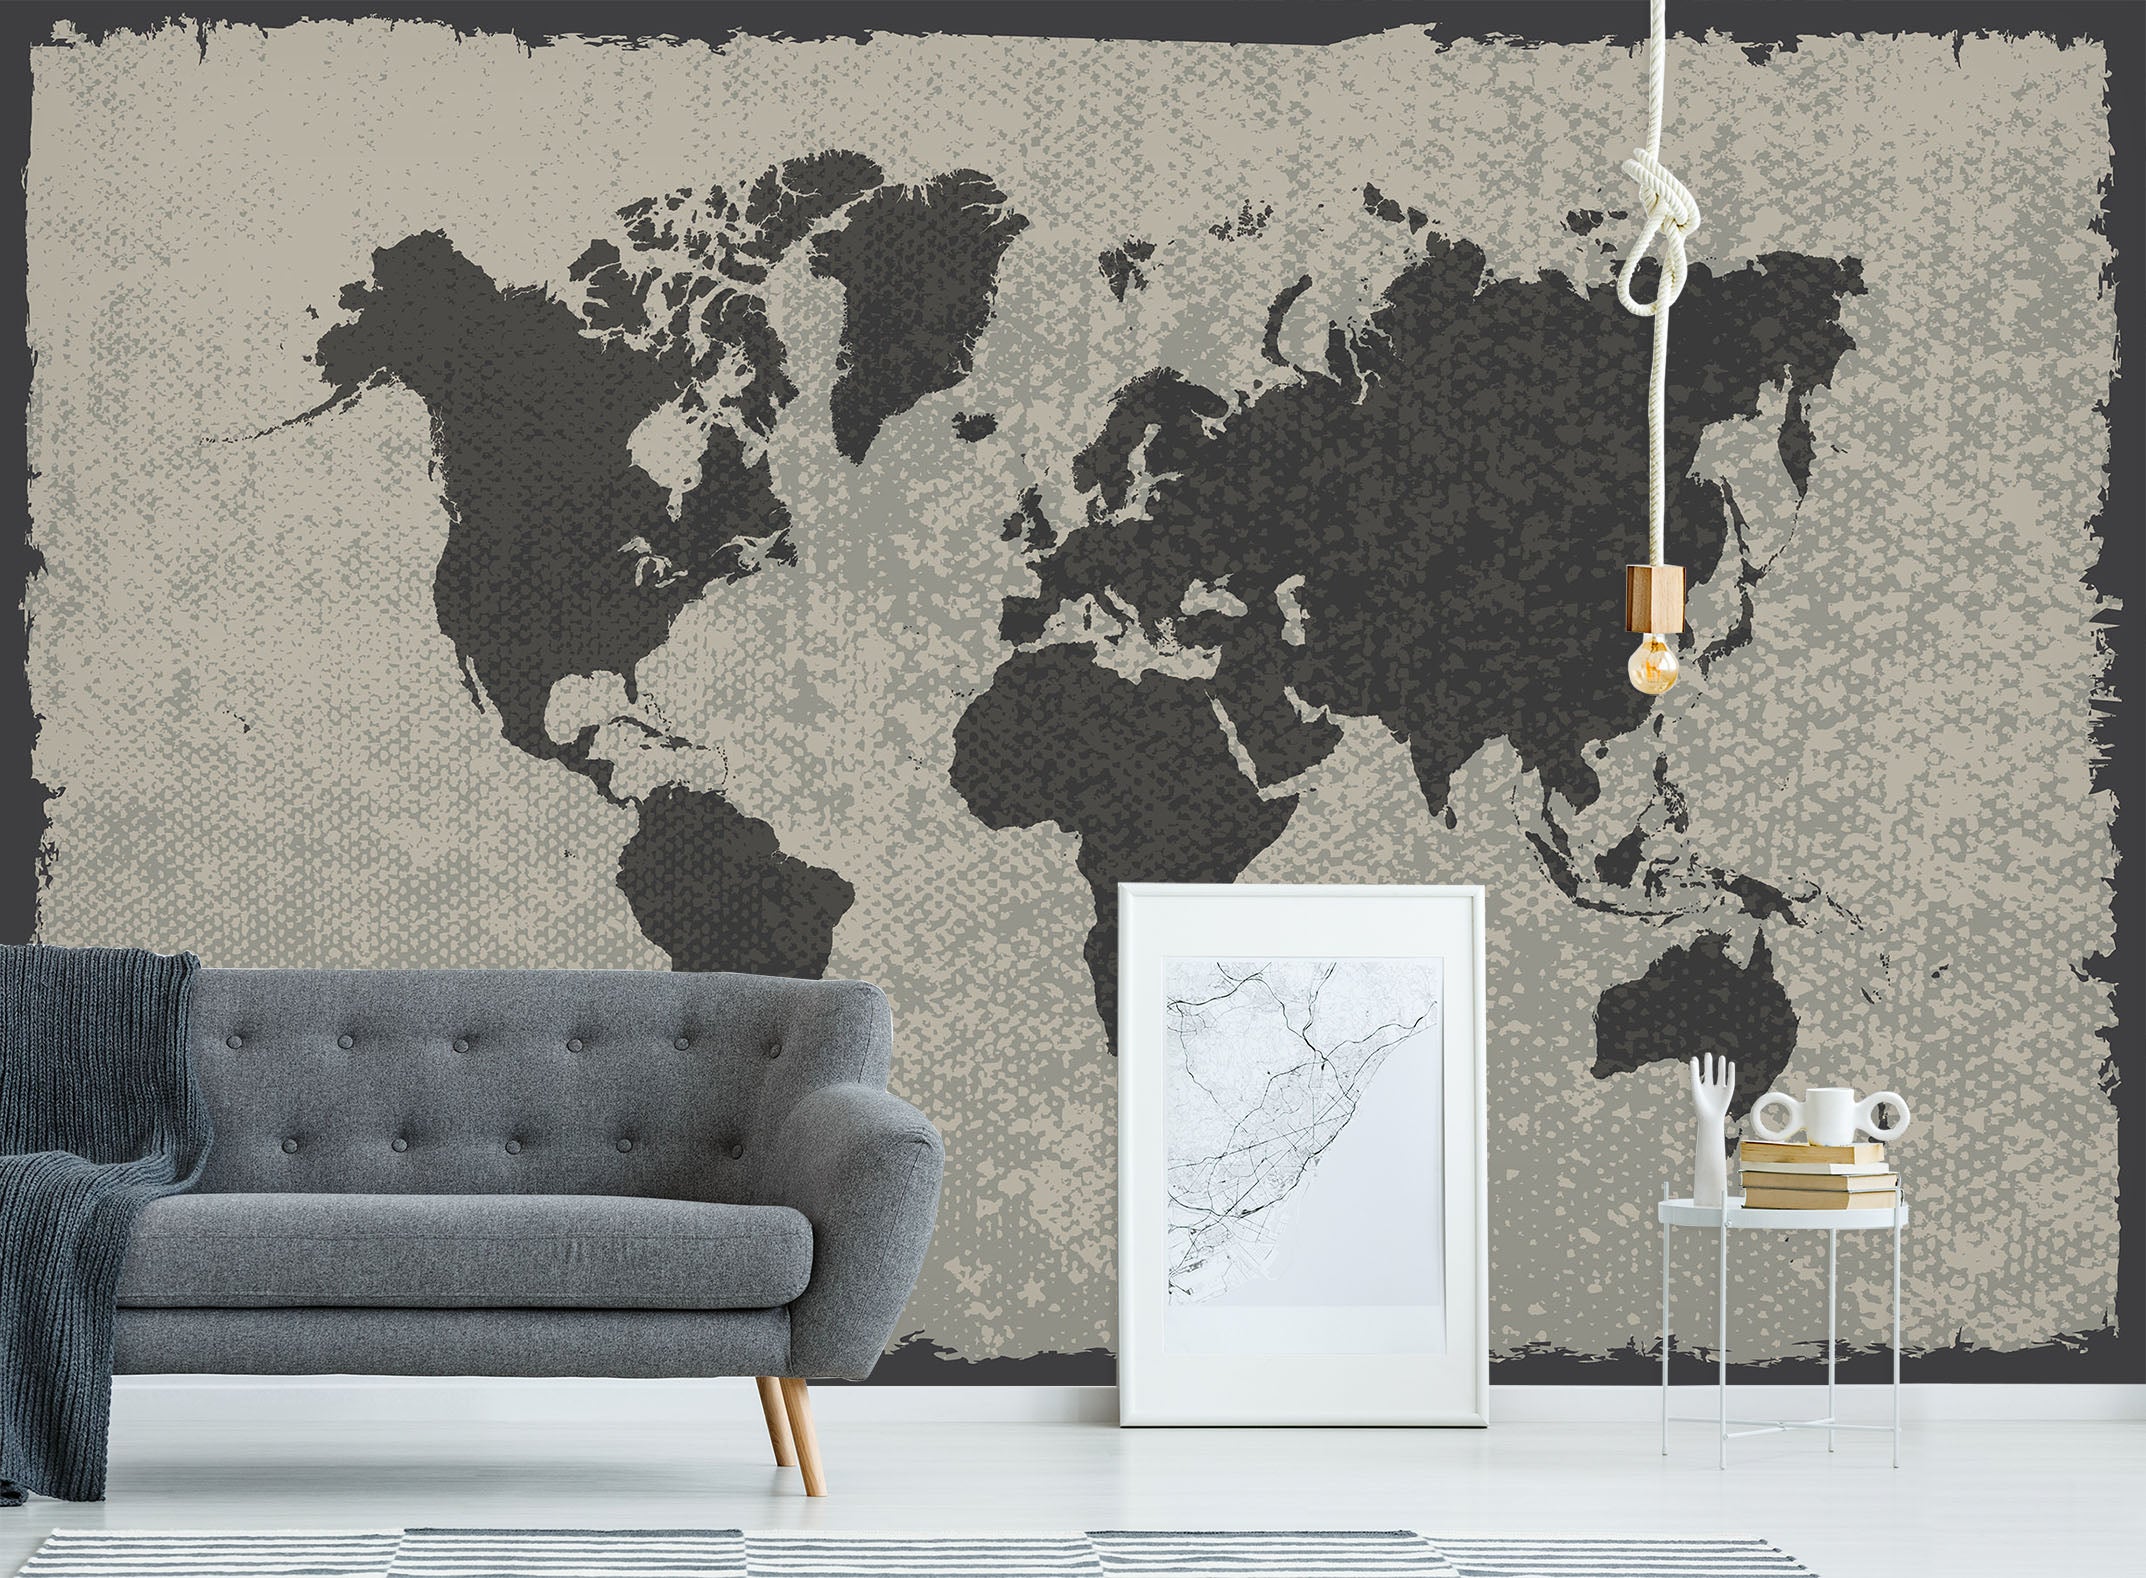 3D Black Pattern 2004 World Map Wall Murals